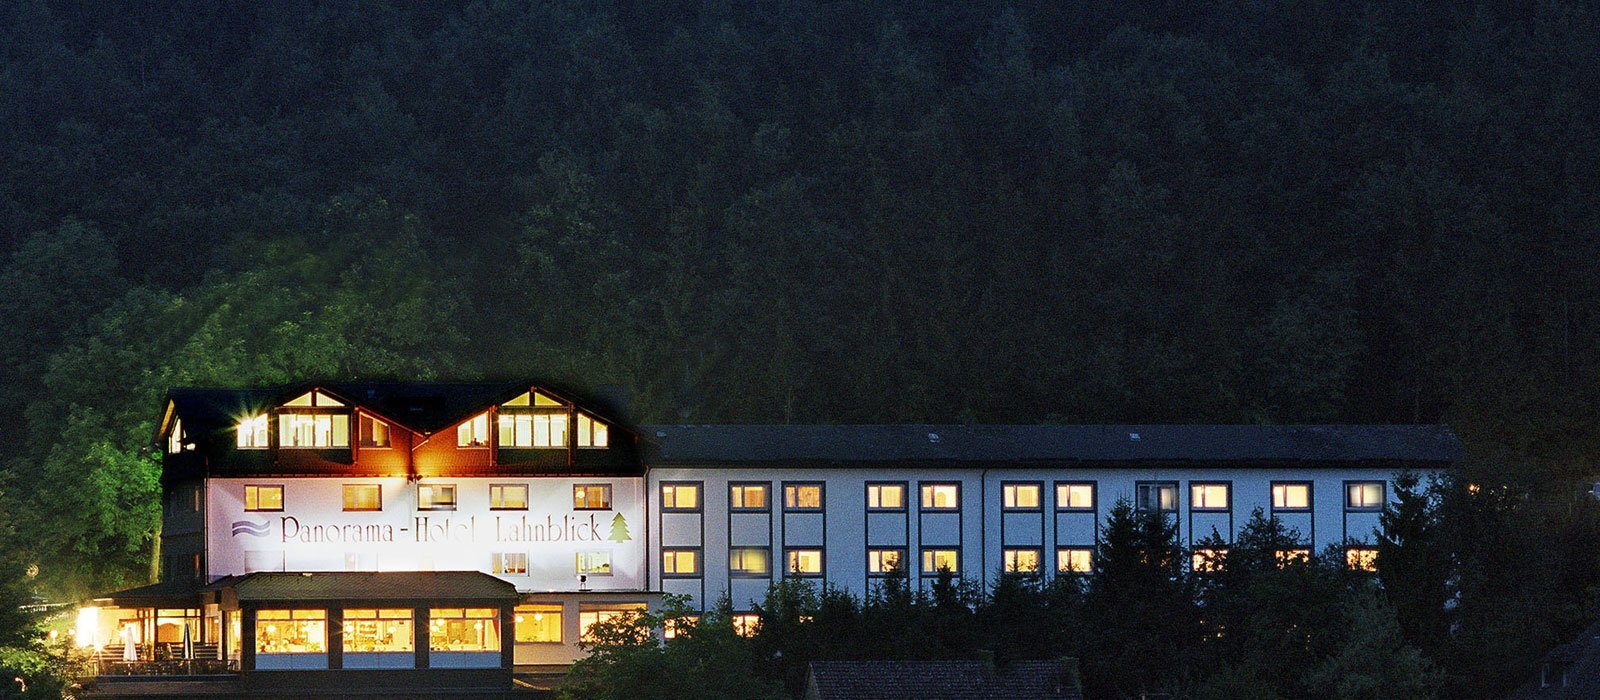 2 Tage Übernachtung inkl. Halbpension für 1 Nacht – Hotel Lahnblick  in Bad Laasphe, Nordrhein-Westfalen inkl. Halbpension